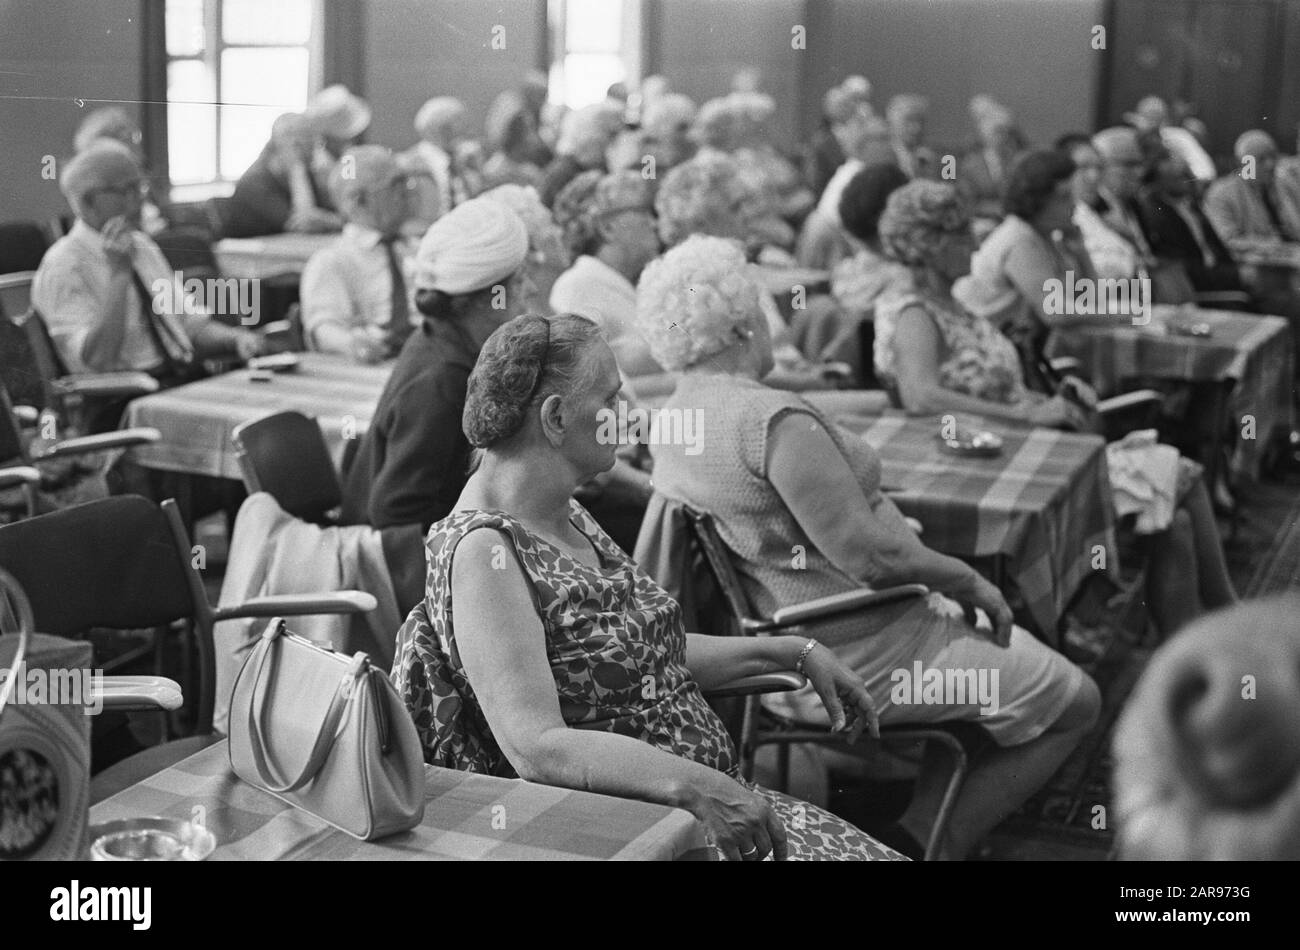 Sitzung der Älteren Partei Allgemeininteresse; ältere Frauen am Versammlungsdatum: 6. August 1970 Schlagwörter: Ältere Menschen, Treffen Personenname: Ältere Menschen Allgemeininteresse Stockfoto